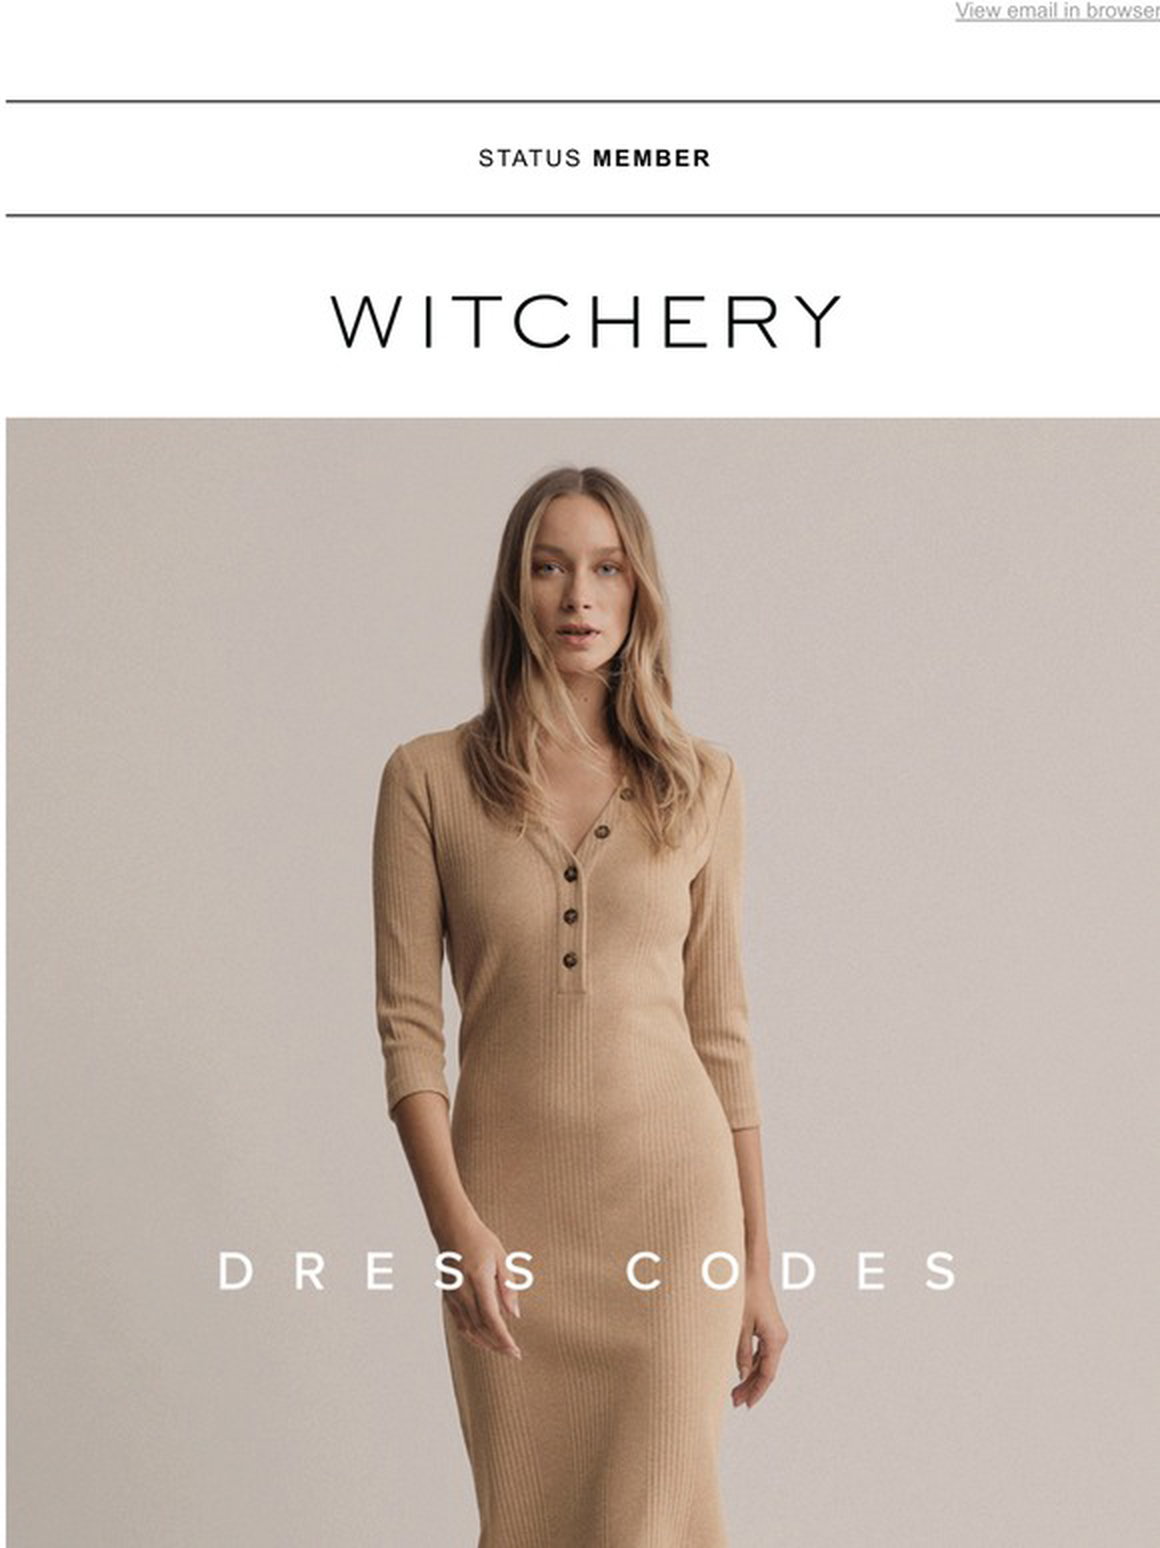 witchery jersey dress